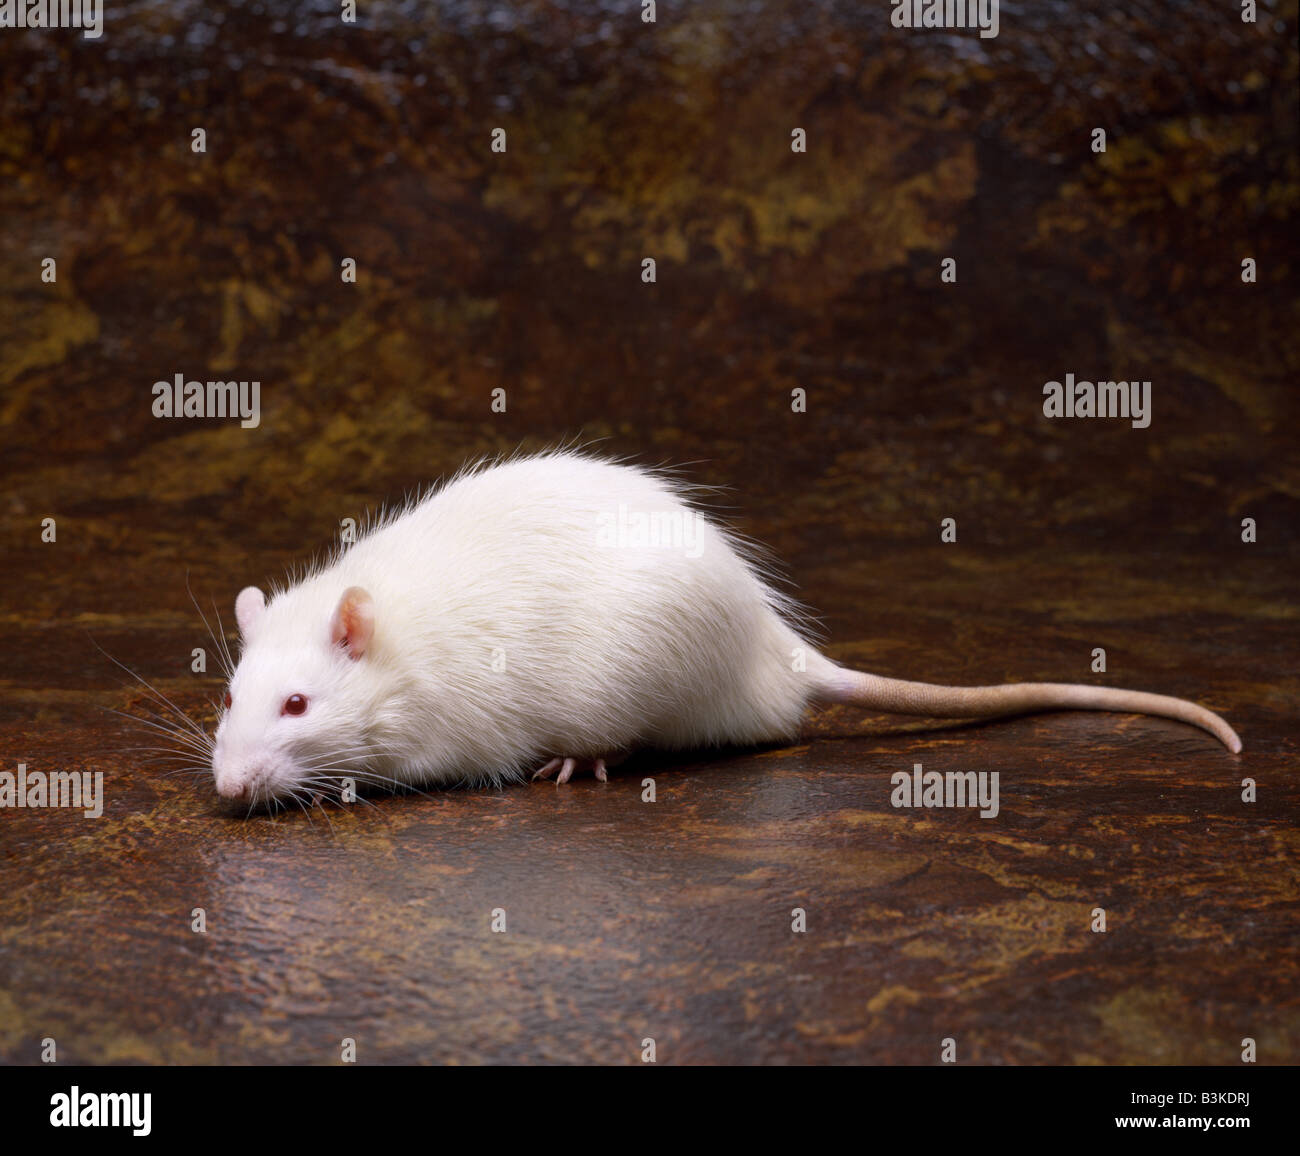 ALBINO LAB RAT (RATTUS NORVEGICUS) STUDIO Stock Photo